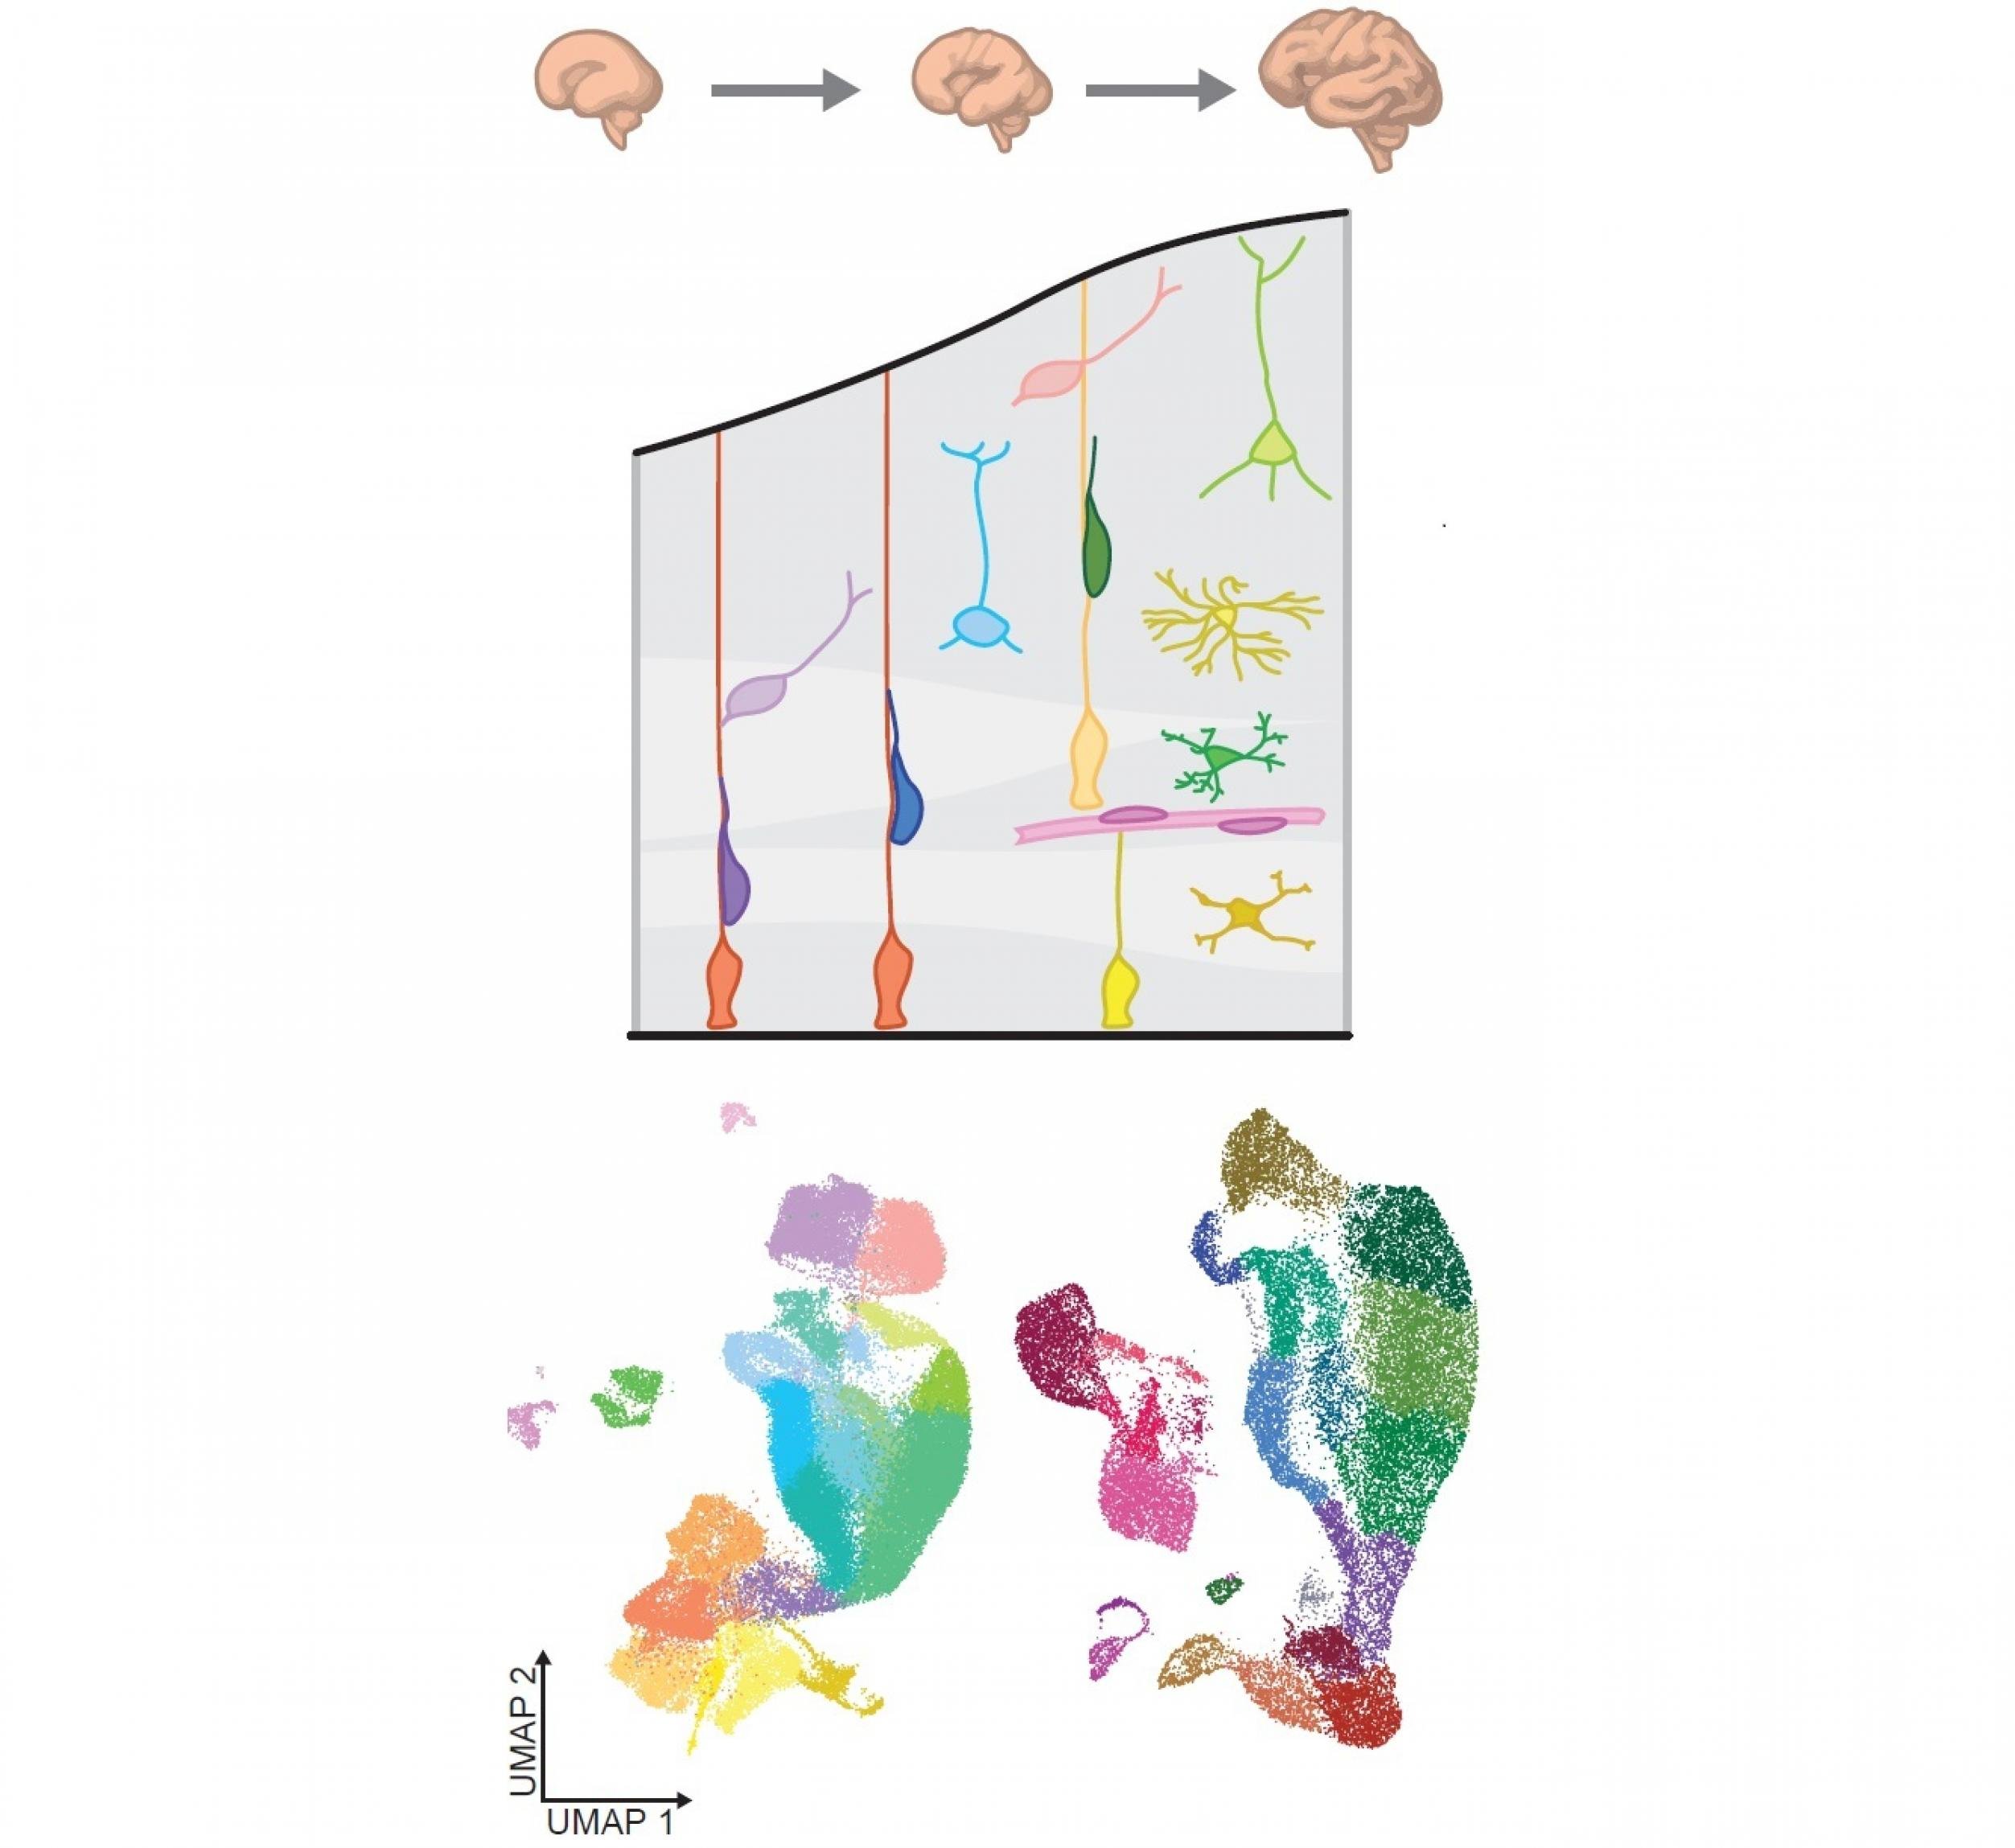 Wissenschaftliche Grafik des Gehirns, einzelner Zellen und einer systembiologischen Auswertung.